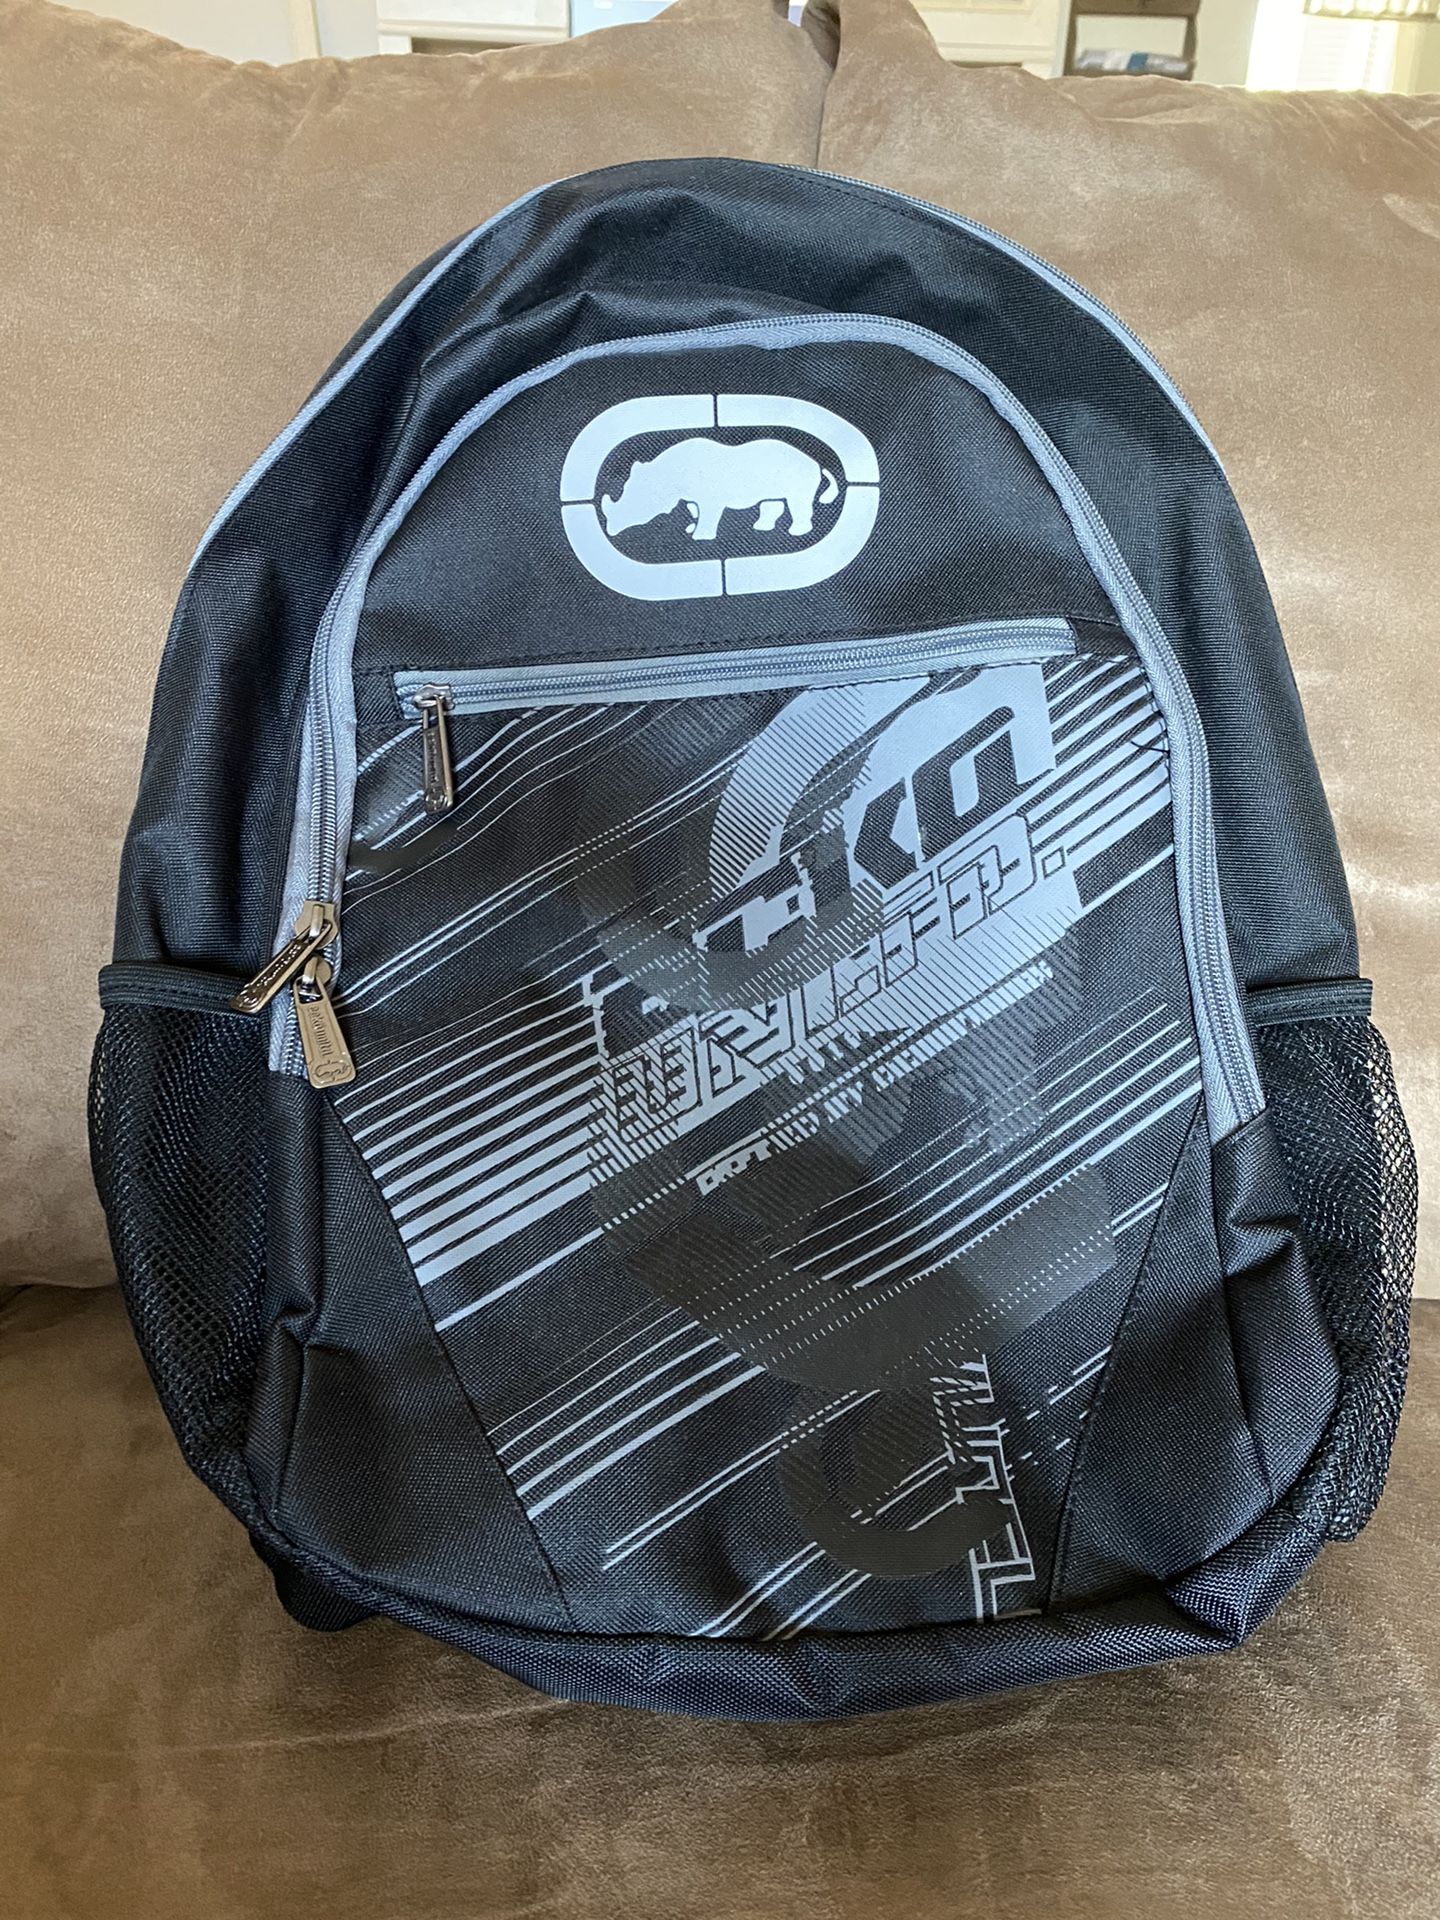 Ecko Unltd laptop backpack